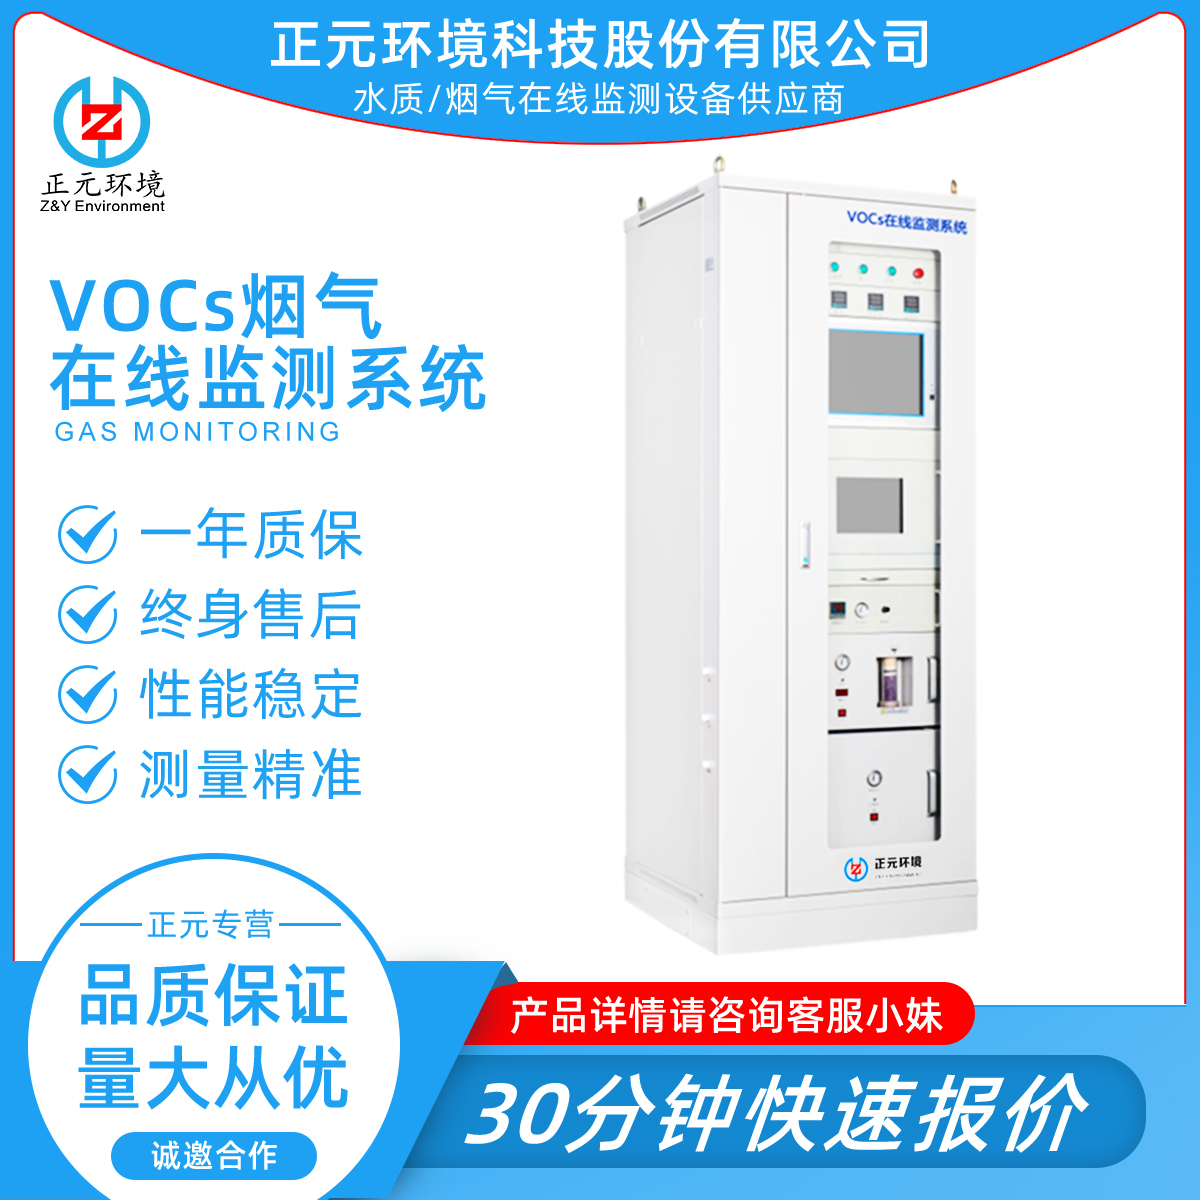 正元环境 VOCs烟气在线监测系统 品牌保证 测量精准